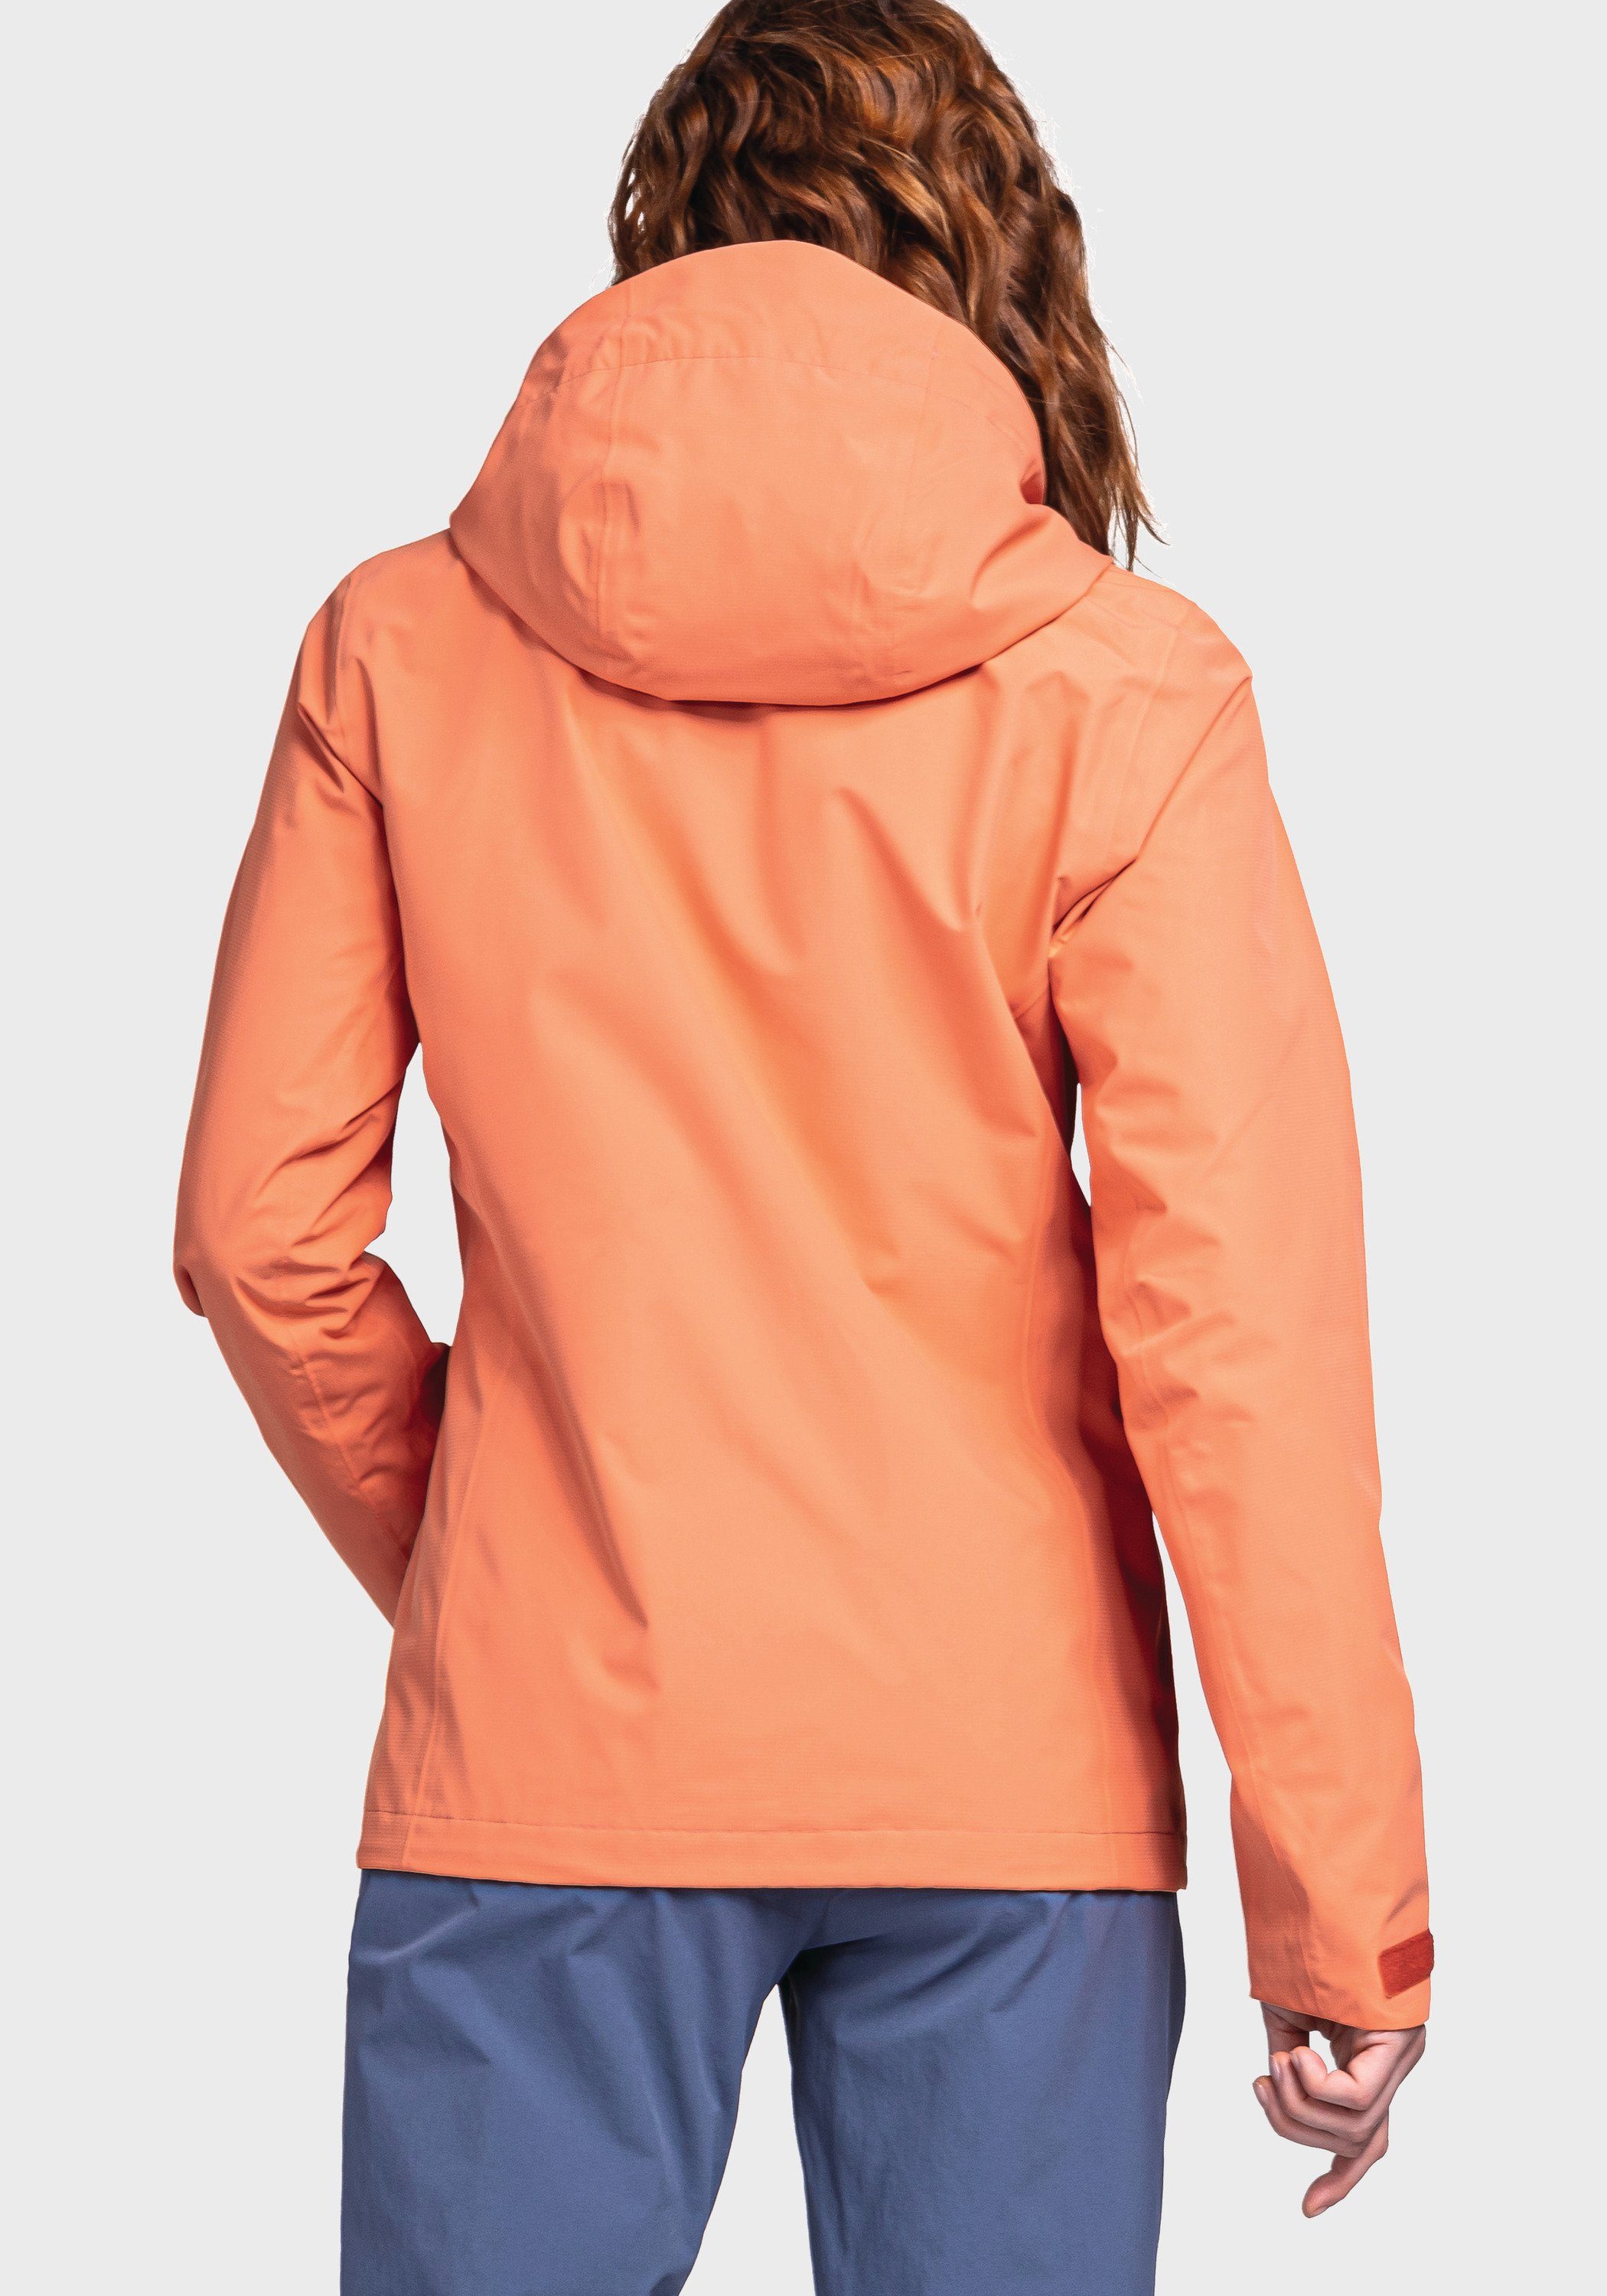 Gmund Schöffel orange Outdoorjacke Jacket L